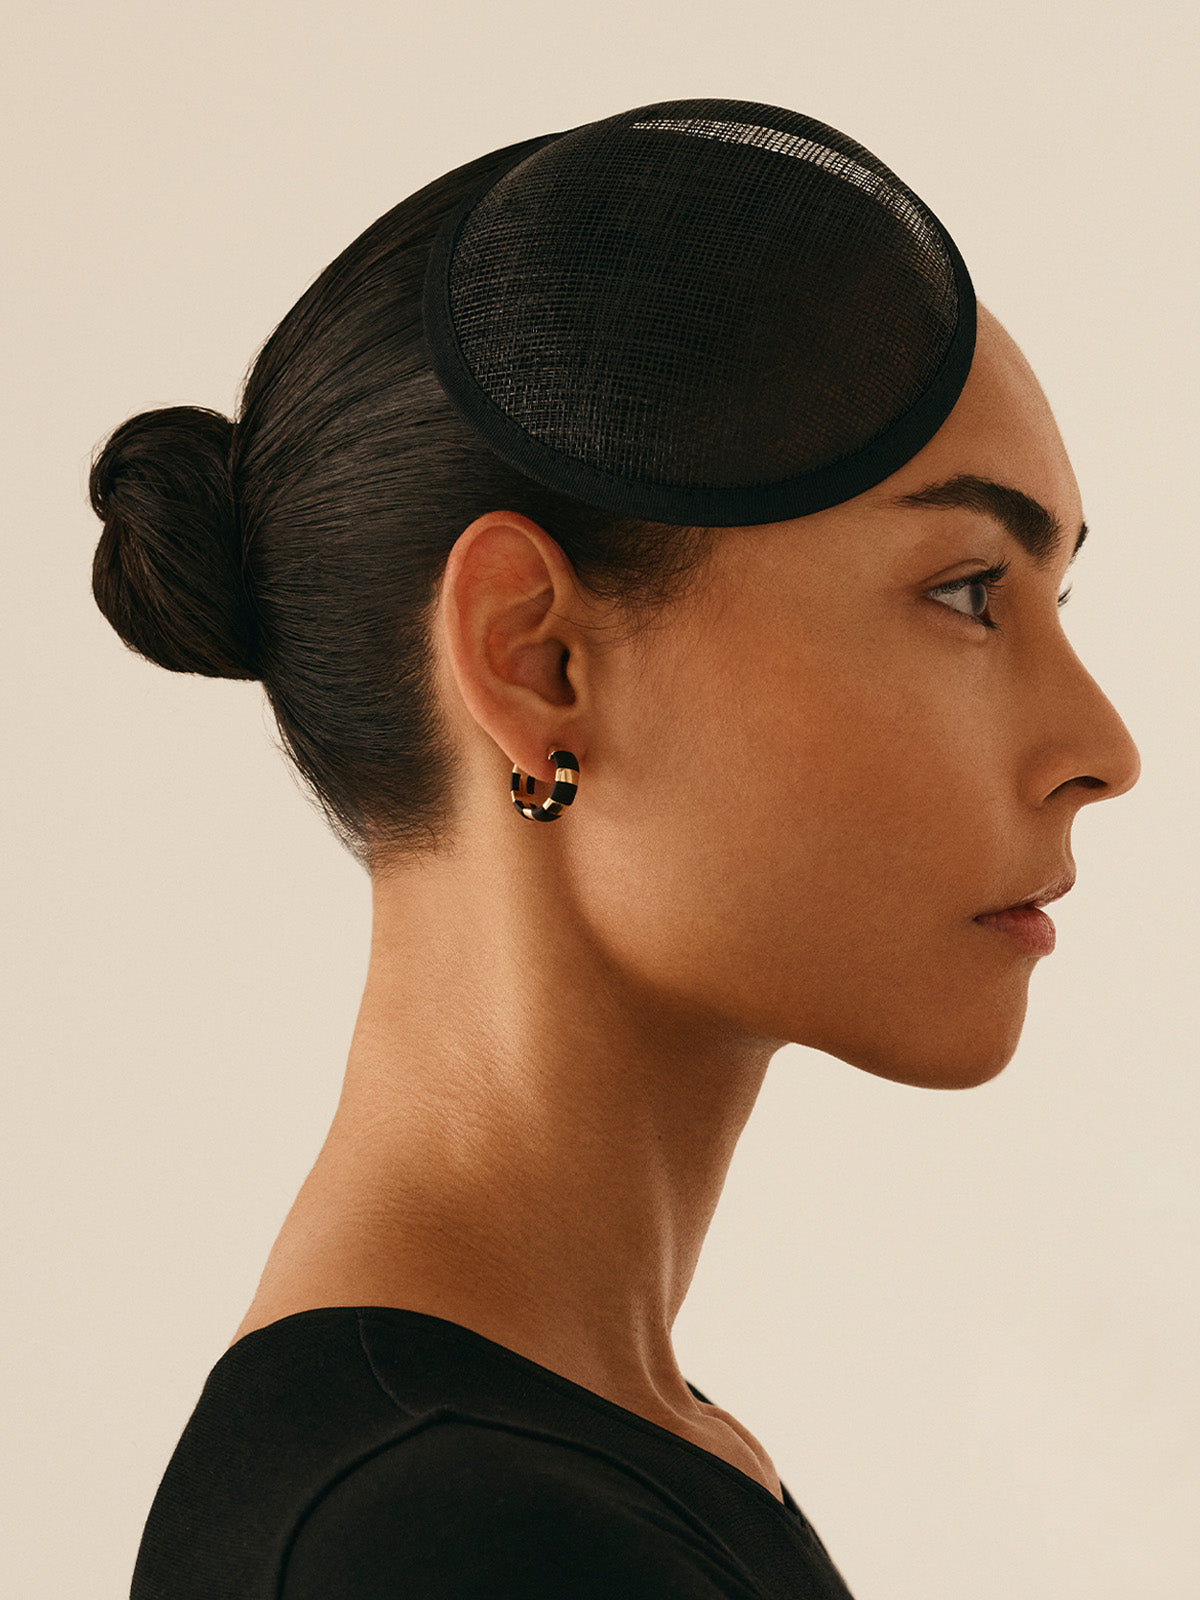 KINRADEN APS ELSA Earring - 18k gold Earrings